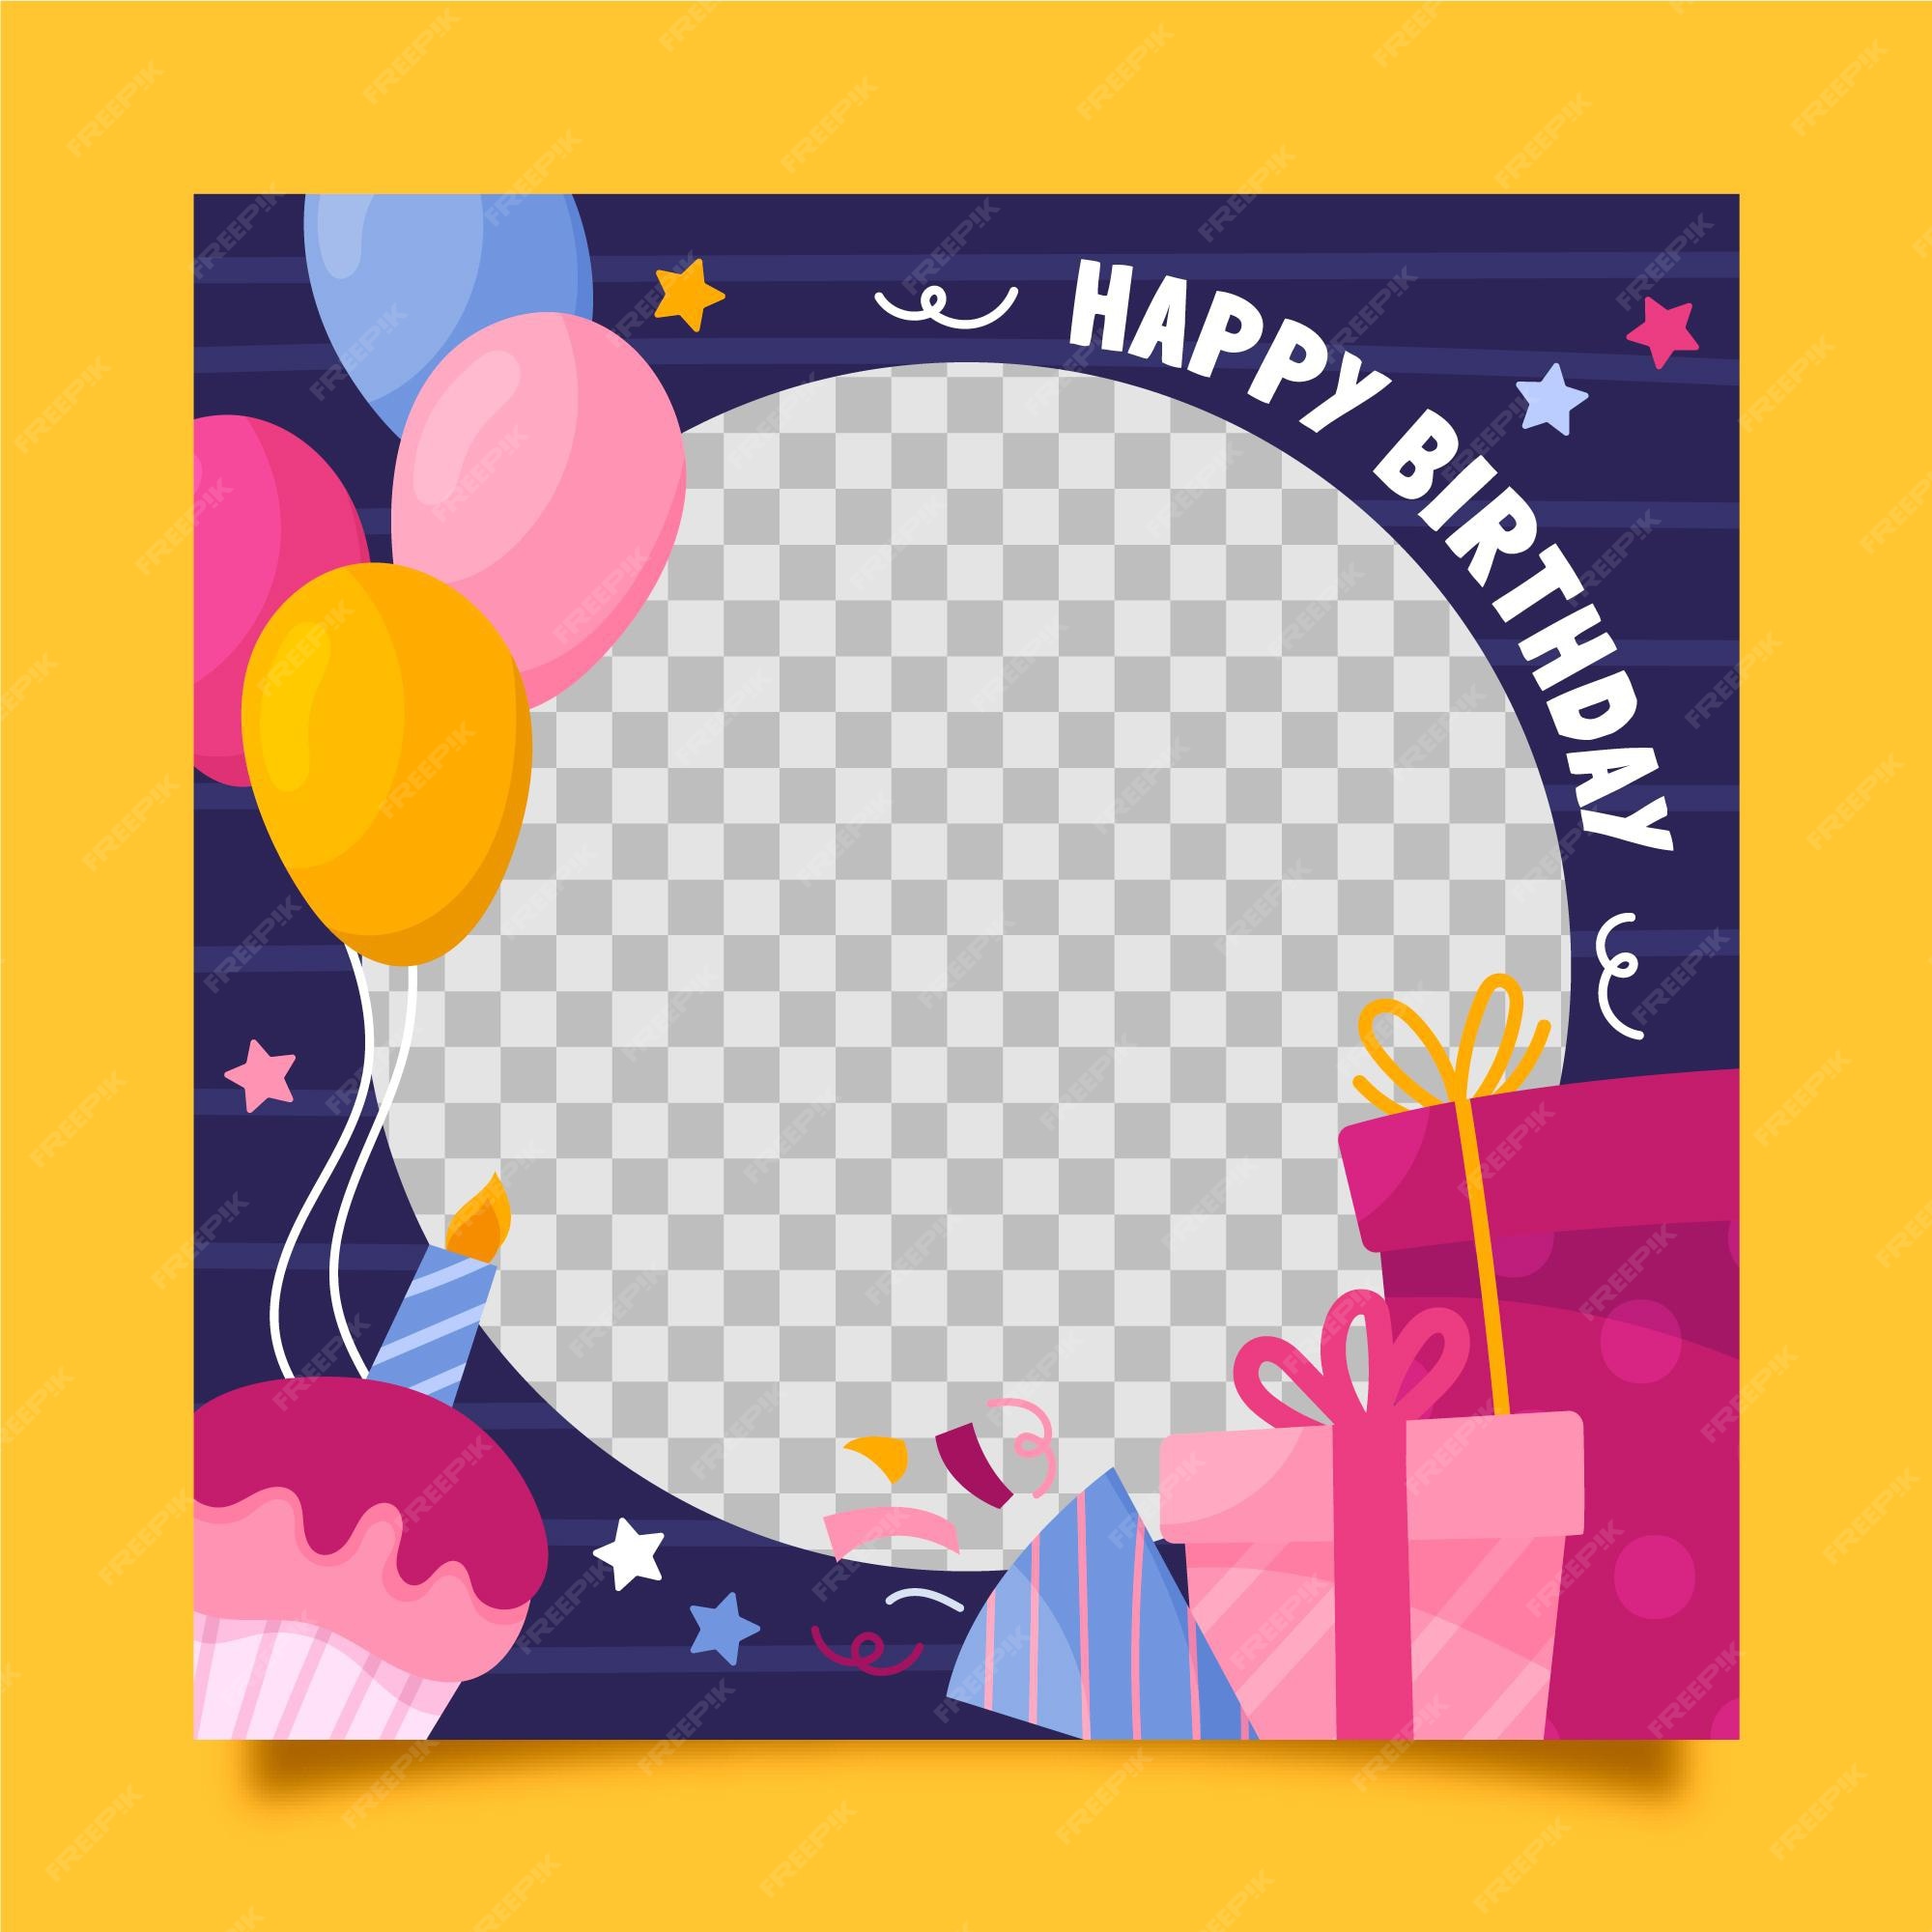 Hãy chào đón sinh nhật của bạn bằng khung ảnh Facebook sinh nhật lễ hội nổi bật! Hãy xem hình ảnh liên quan để tìm kiếm những khung ảnh đẹp mắt và tạo ra một món quà kỷ niệm độc đáo cho bữa tiệc của bạn!